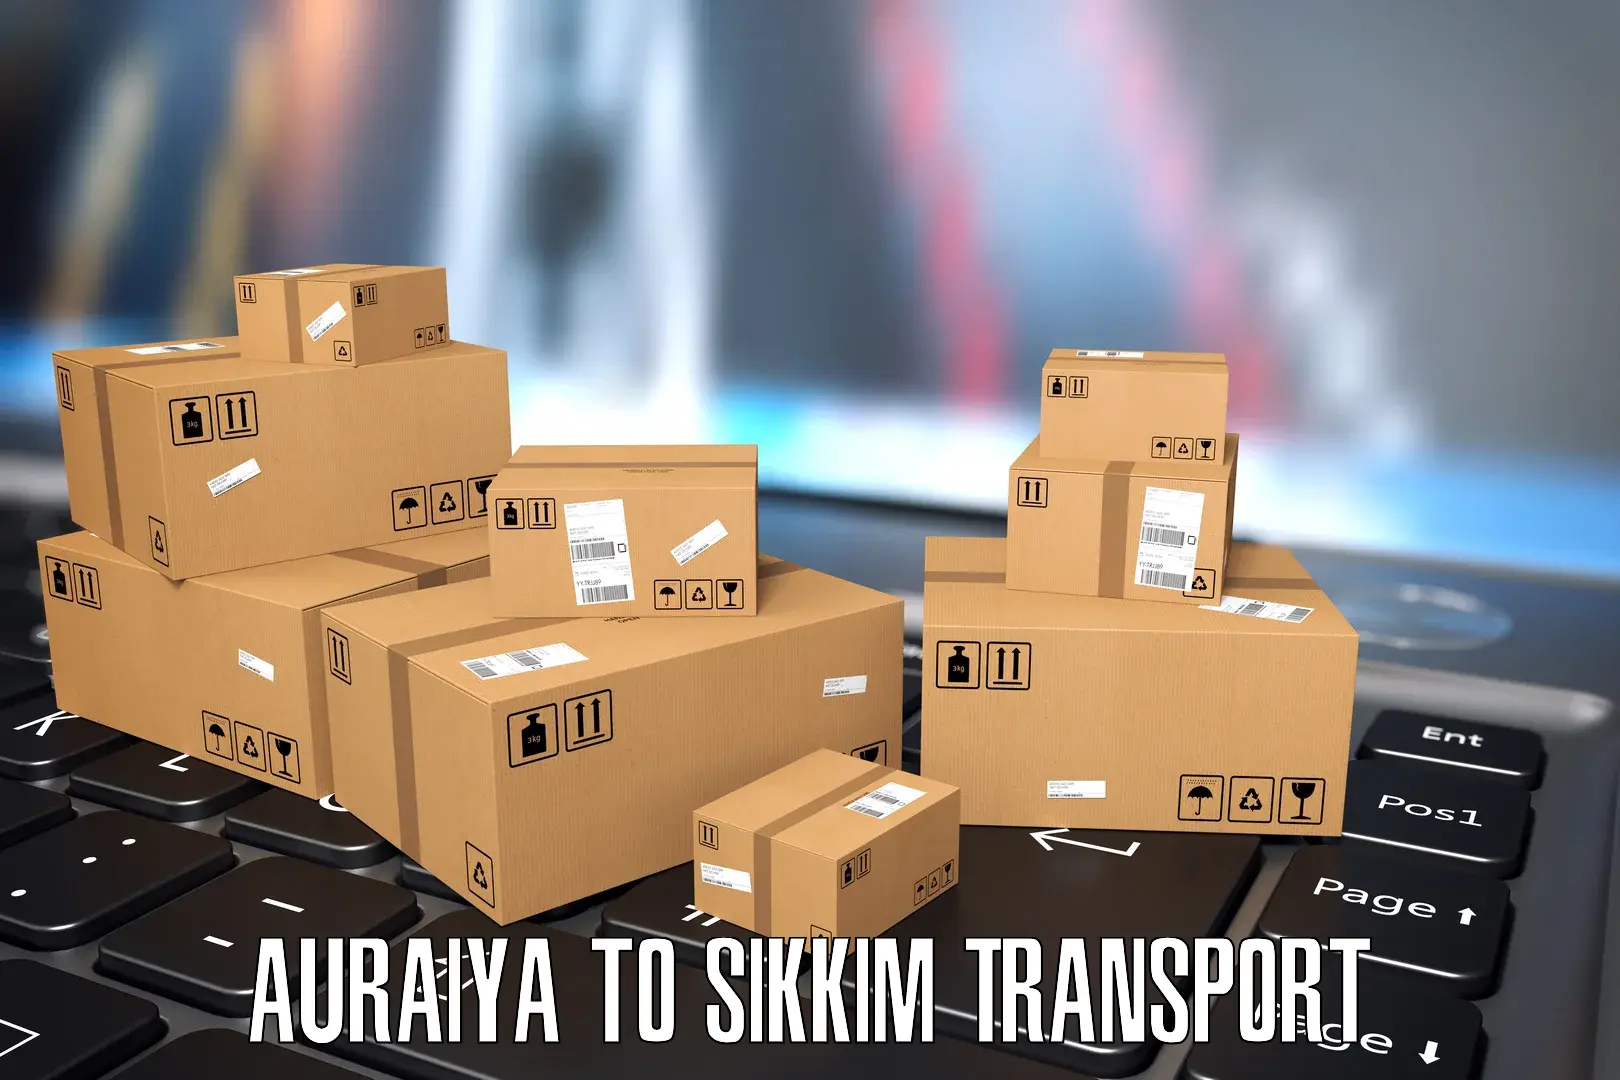 Furniture transport service Auraiya to West Sikkim